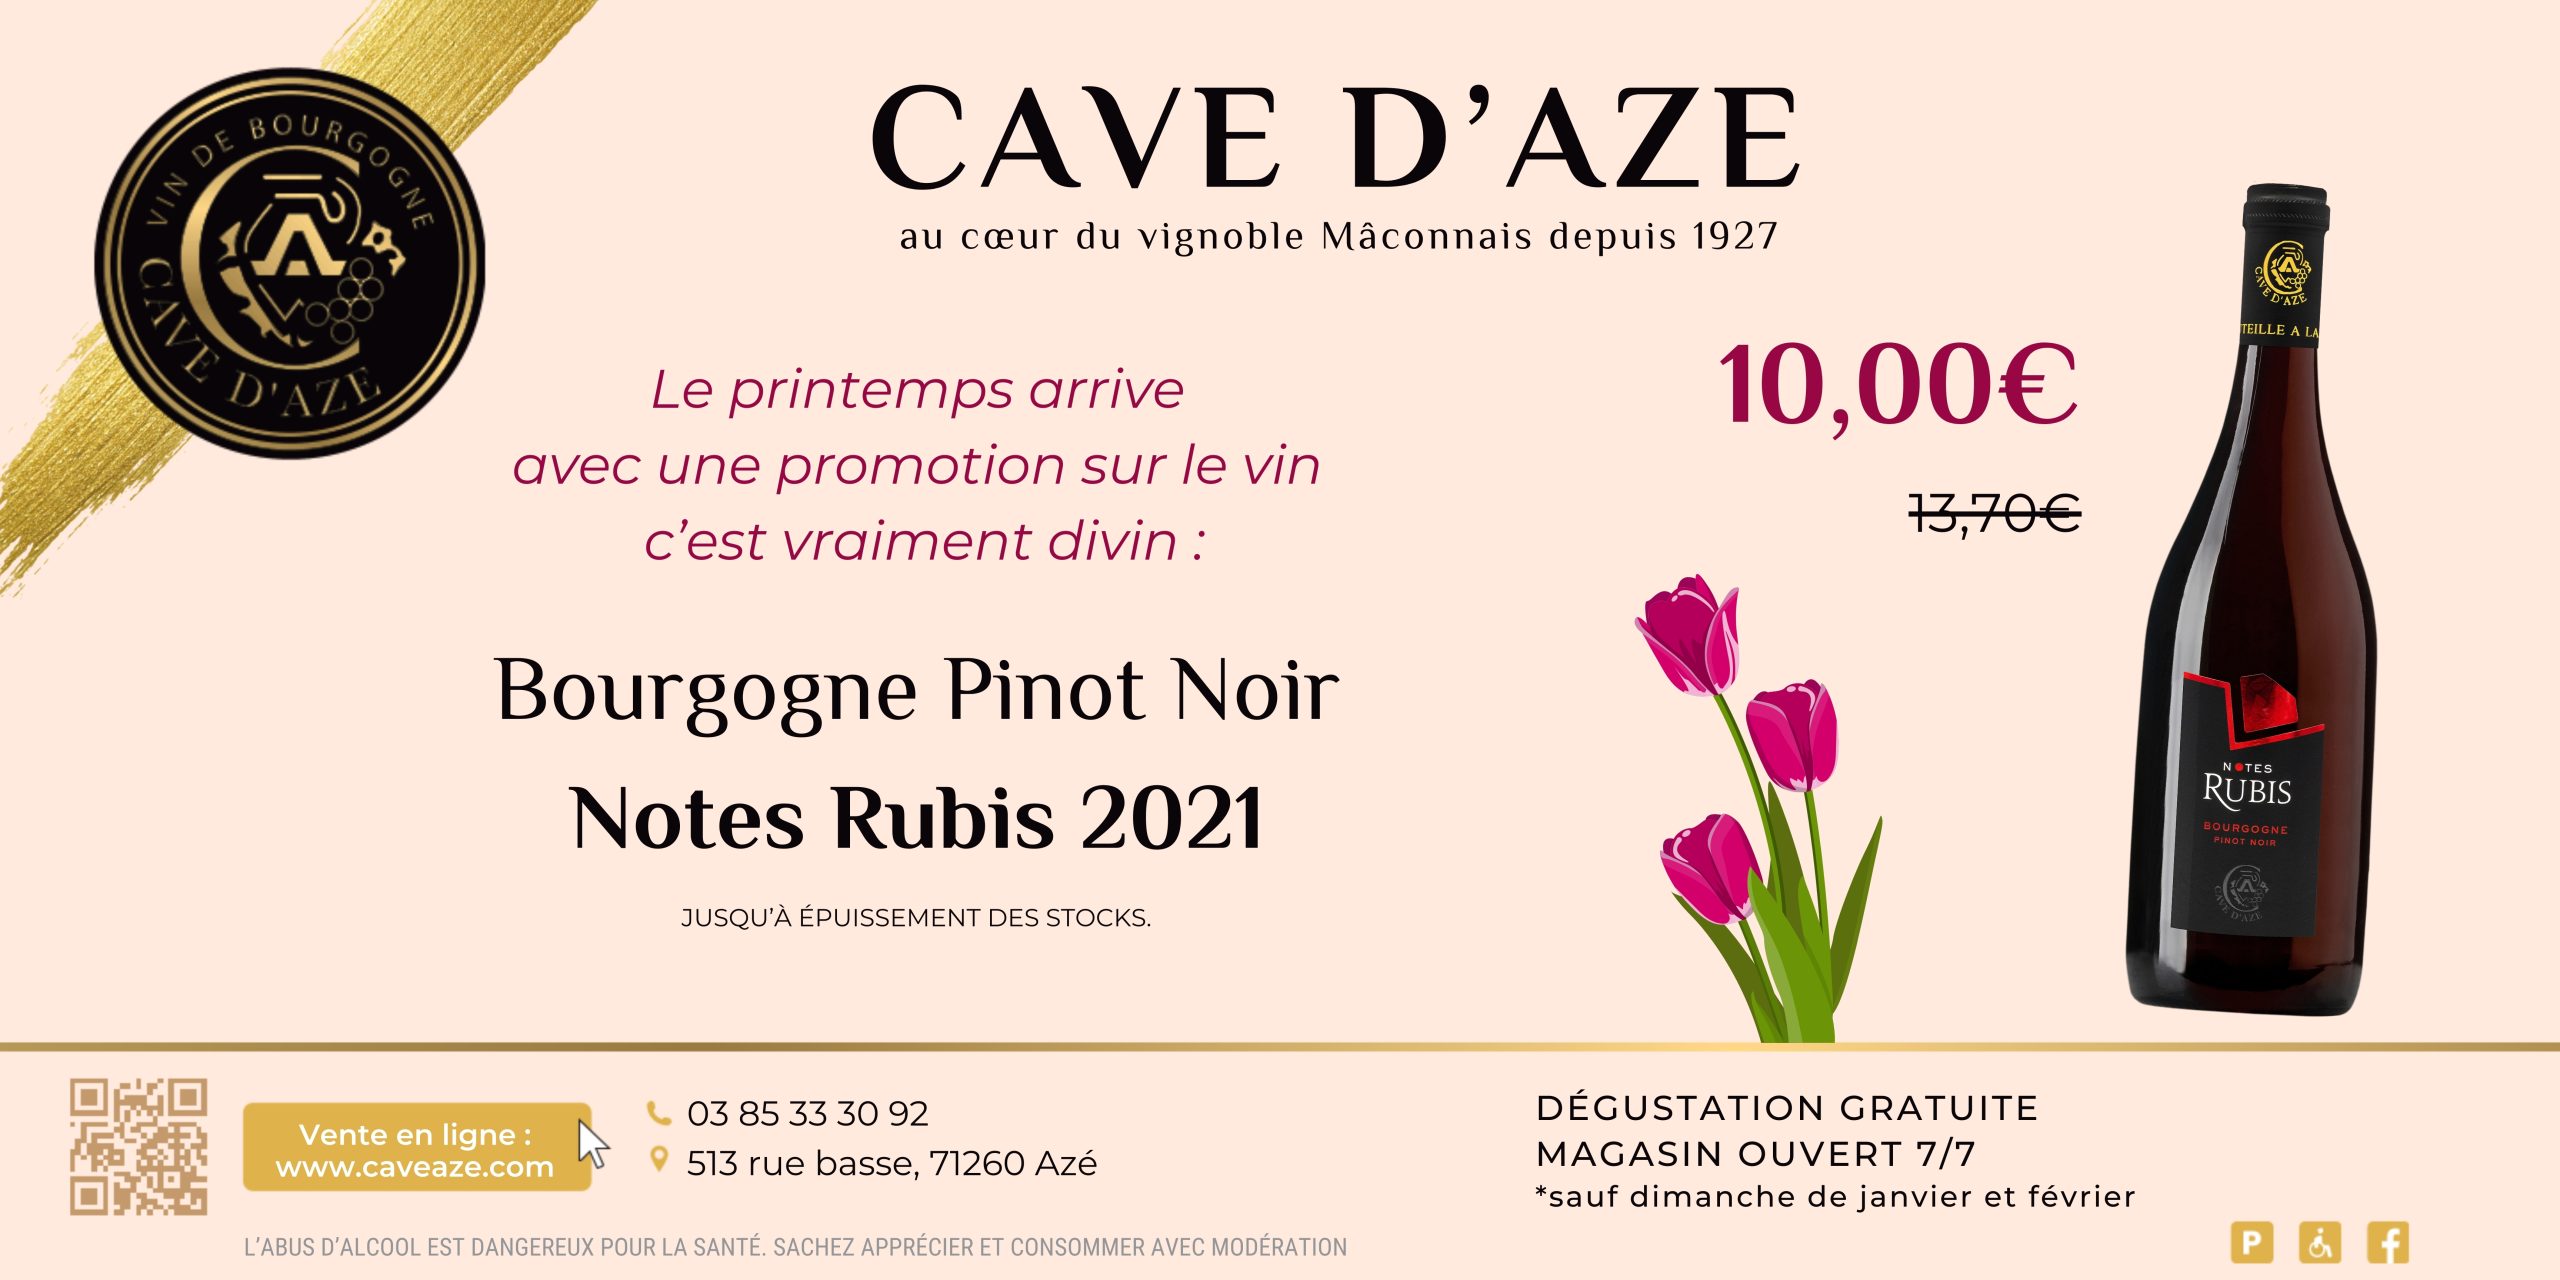 Promotion Bourgogne Pinot Noir Notes Rubis, jusqu'à épuisement des stocks.